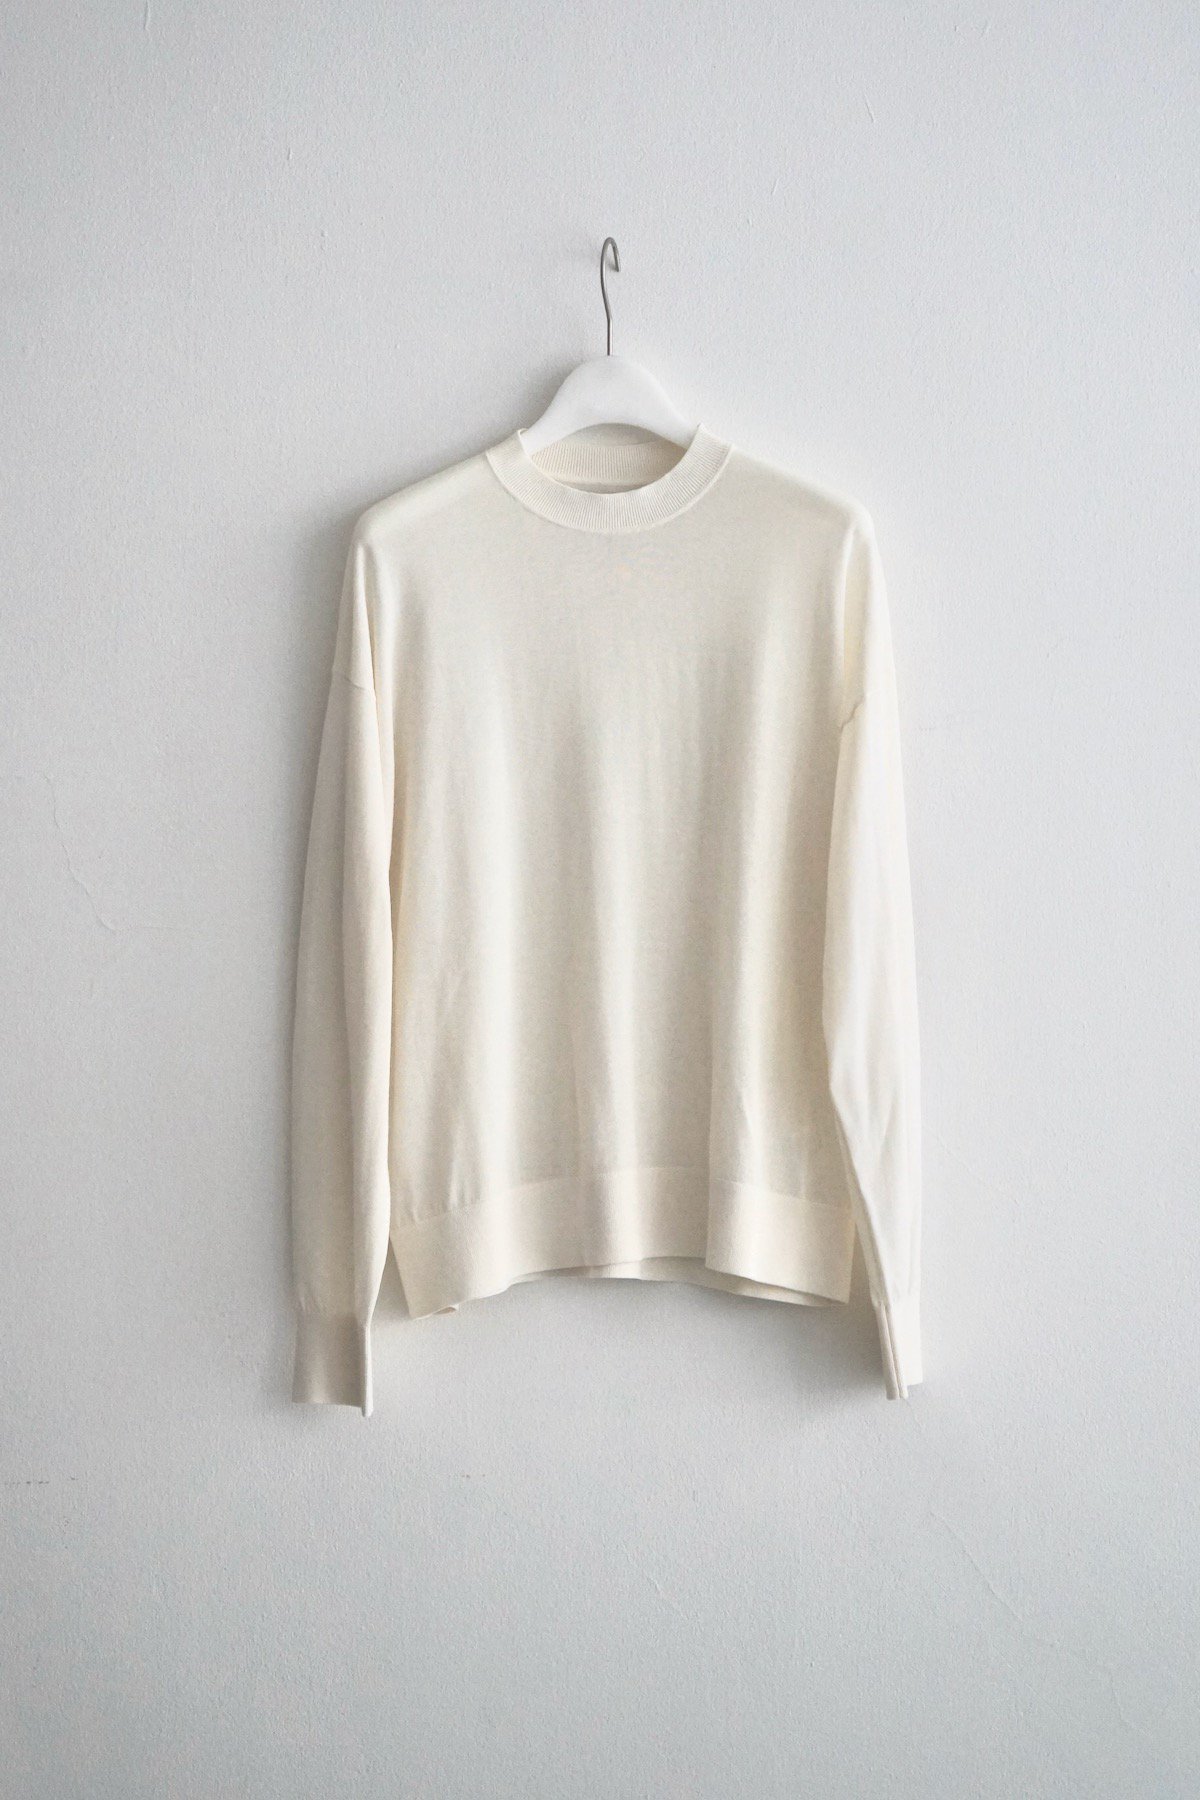 KLOKE / Aurum Sheer Sweater / Ecru